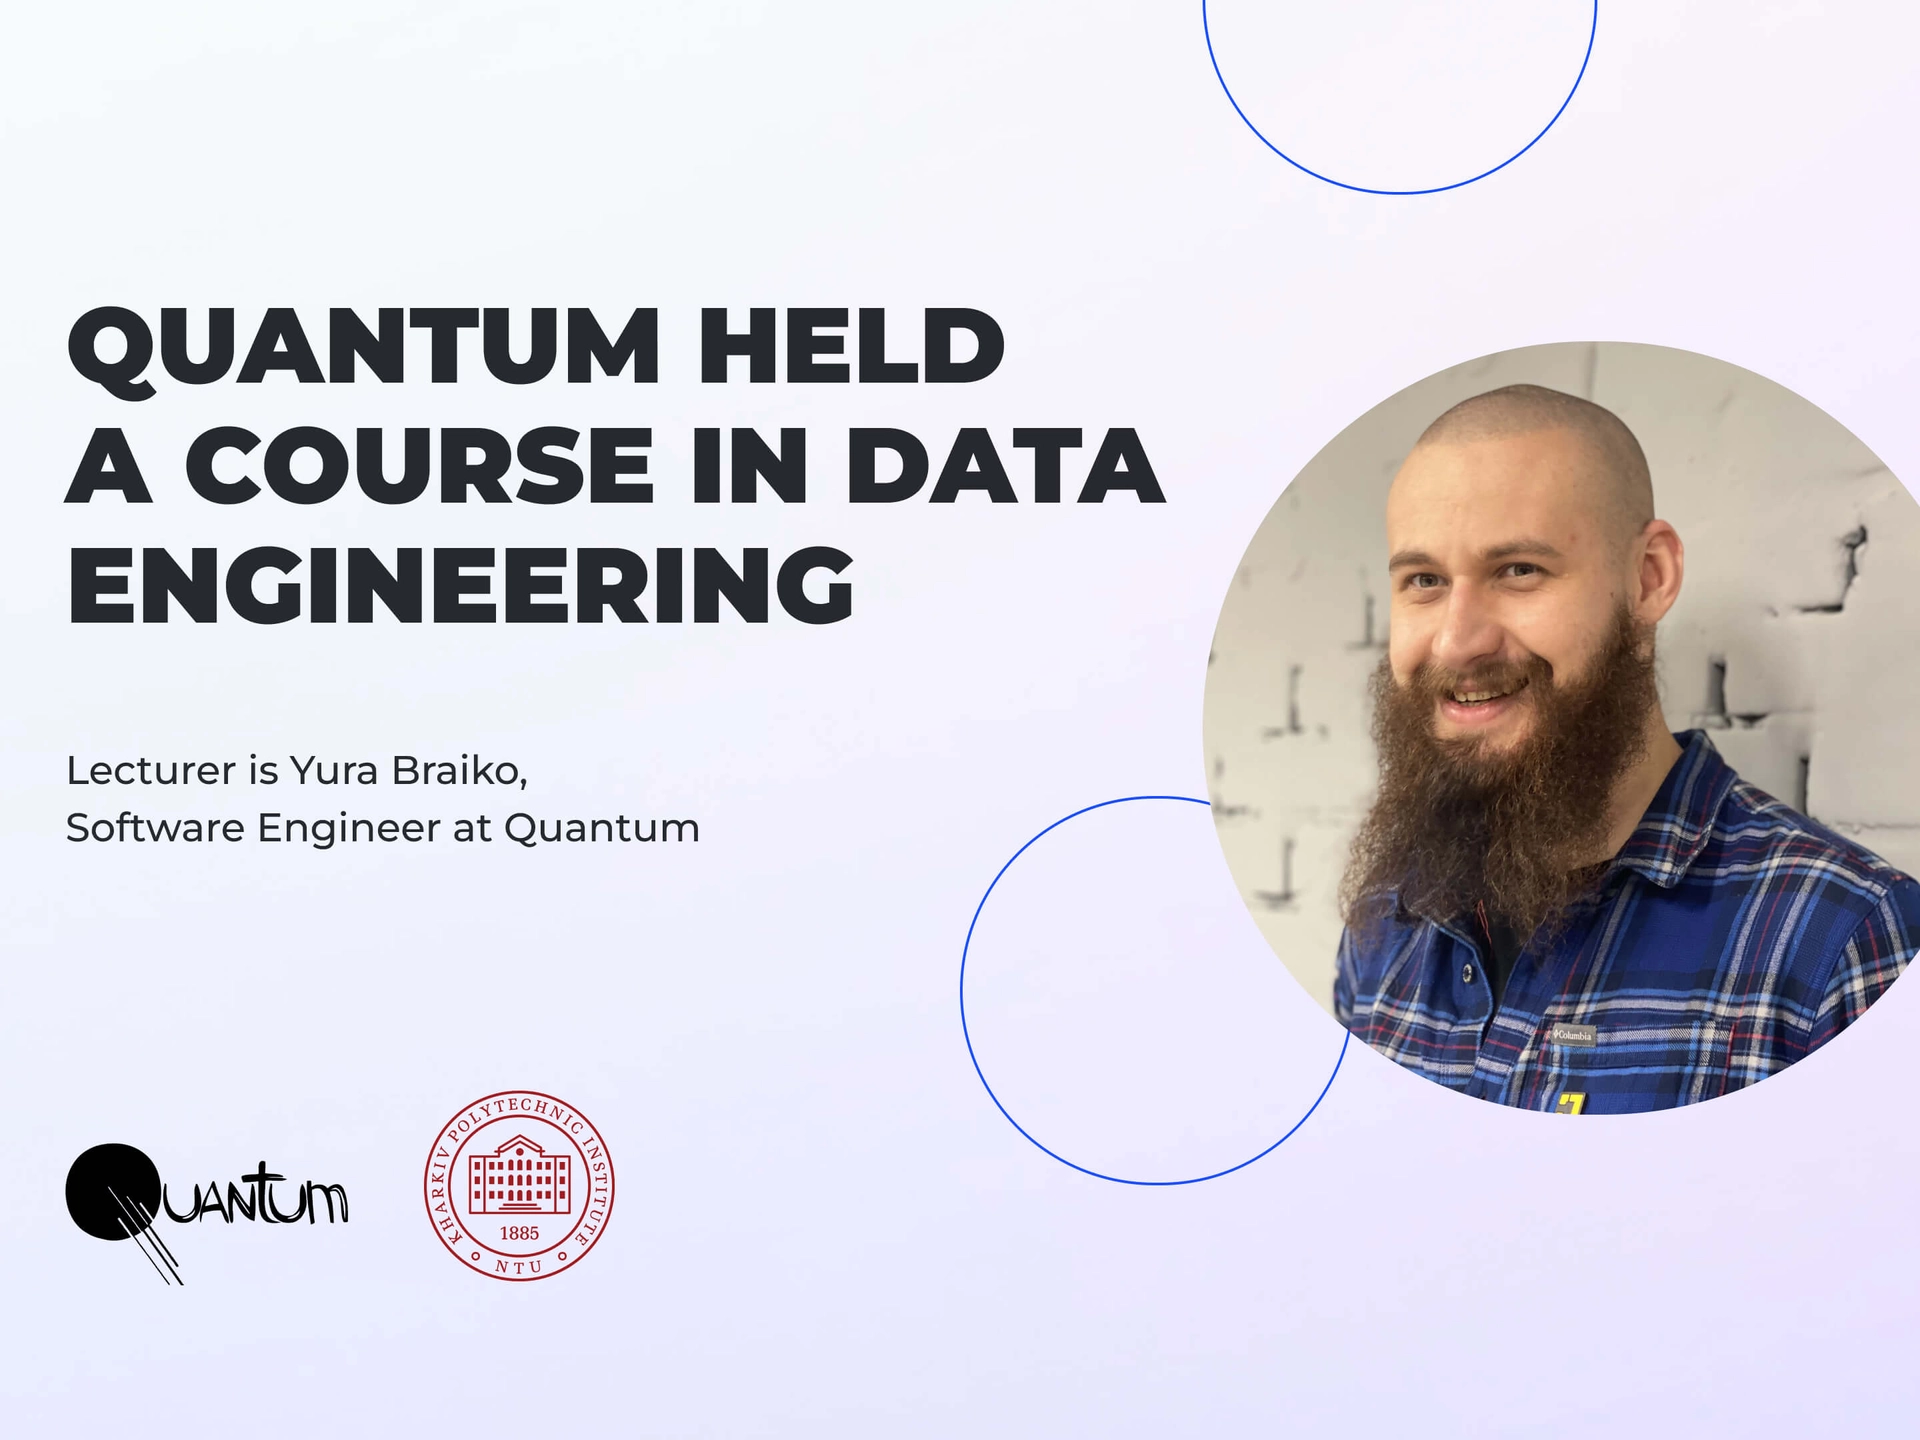 Quantum Data Engineering course